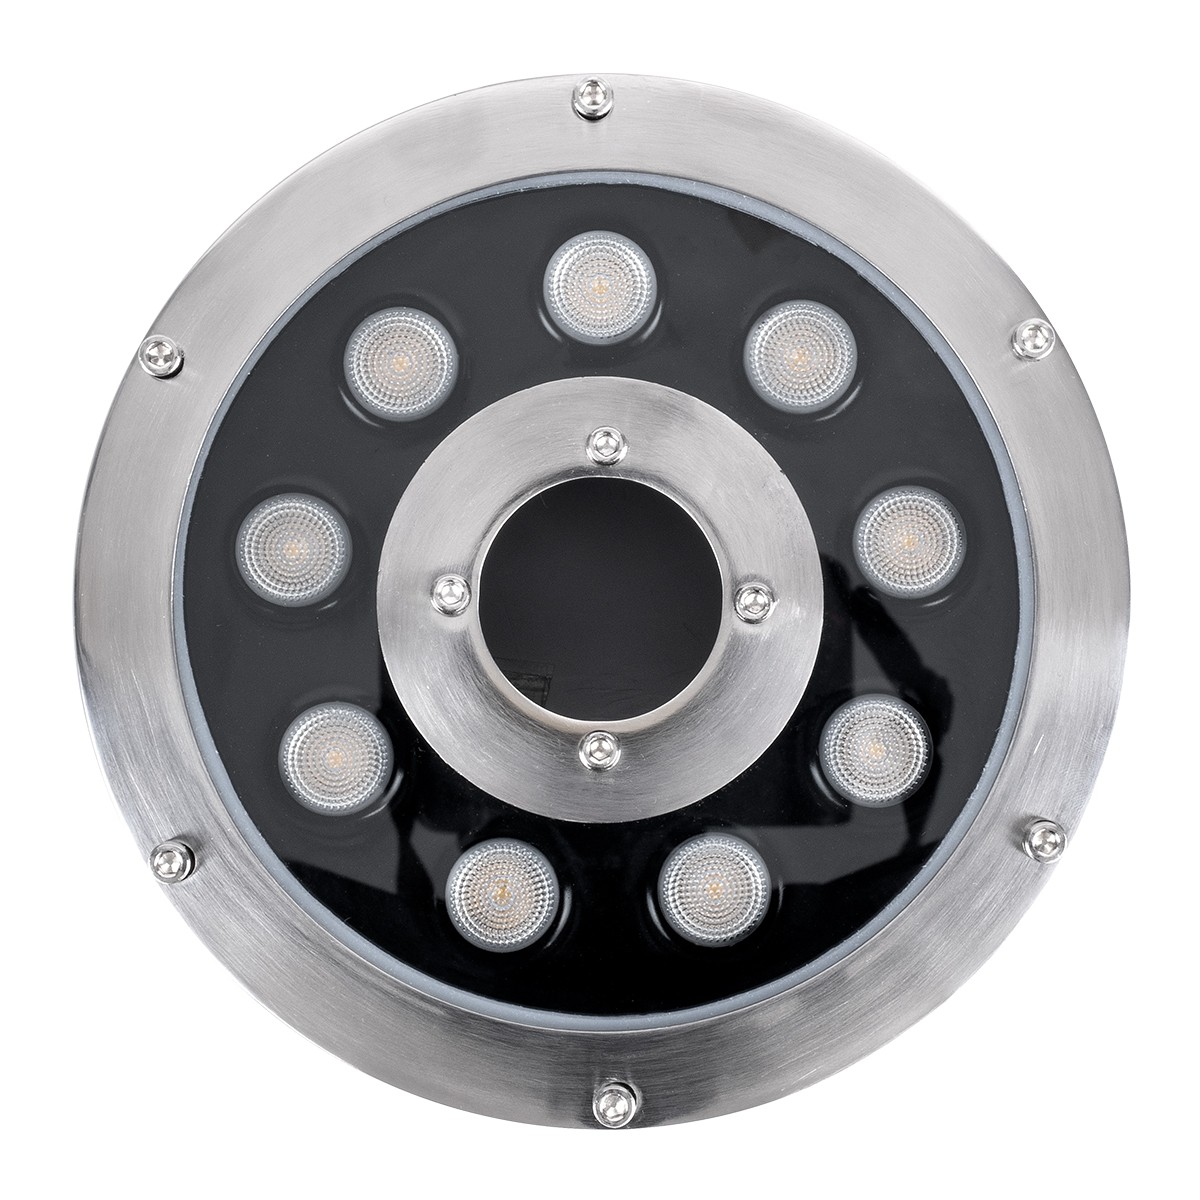 LED Φωτιστικό Υποβρύχιο Σποτ Ειδικό για Σιντριβάνια FINA W IP68 Φ16 x Υ8cm Ανοξείδωτο Ατσάλι